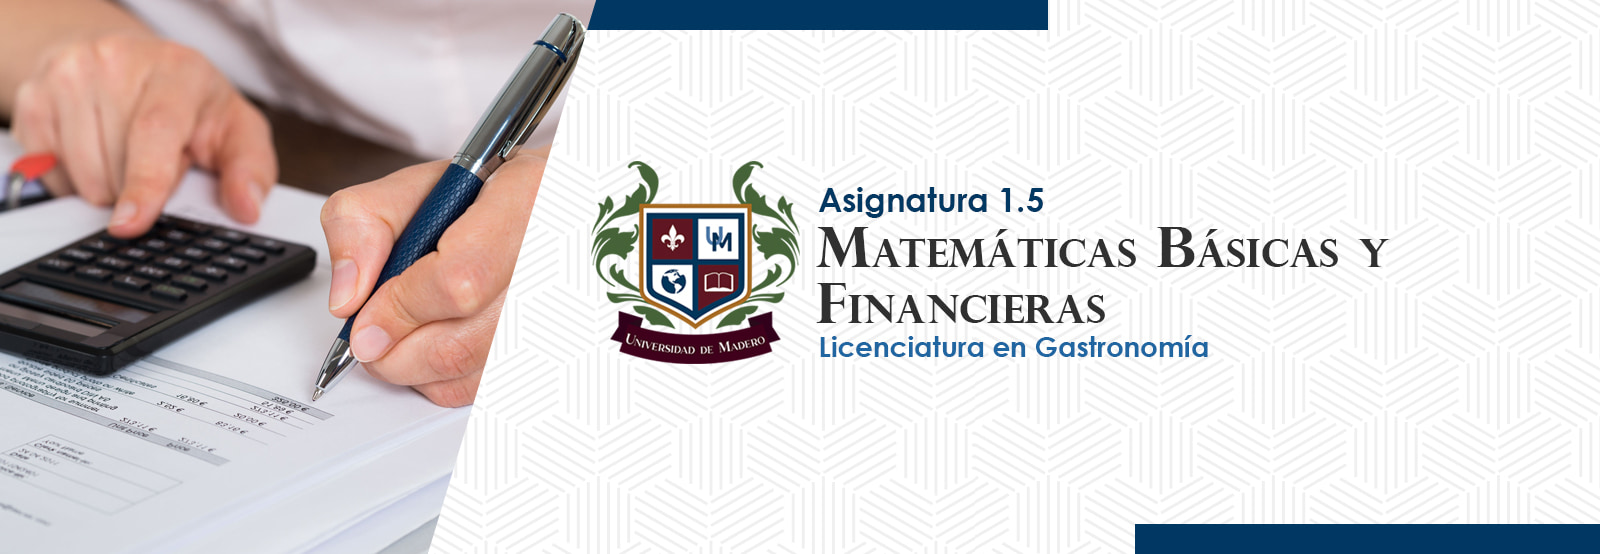 LG0105 Matemáticas Básicas y Financieras